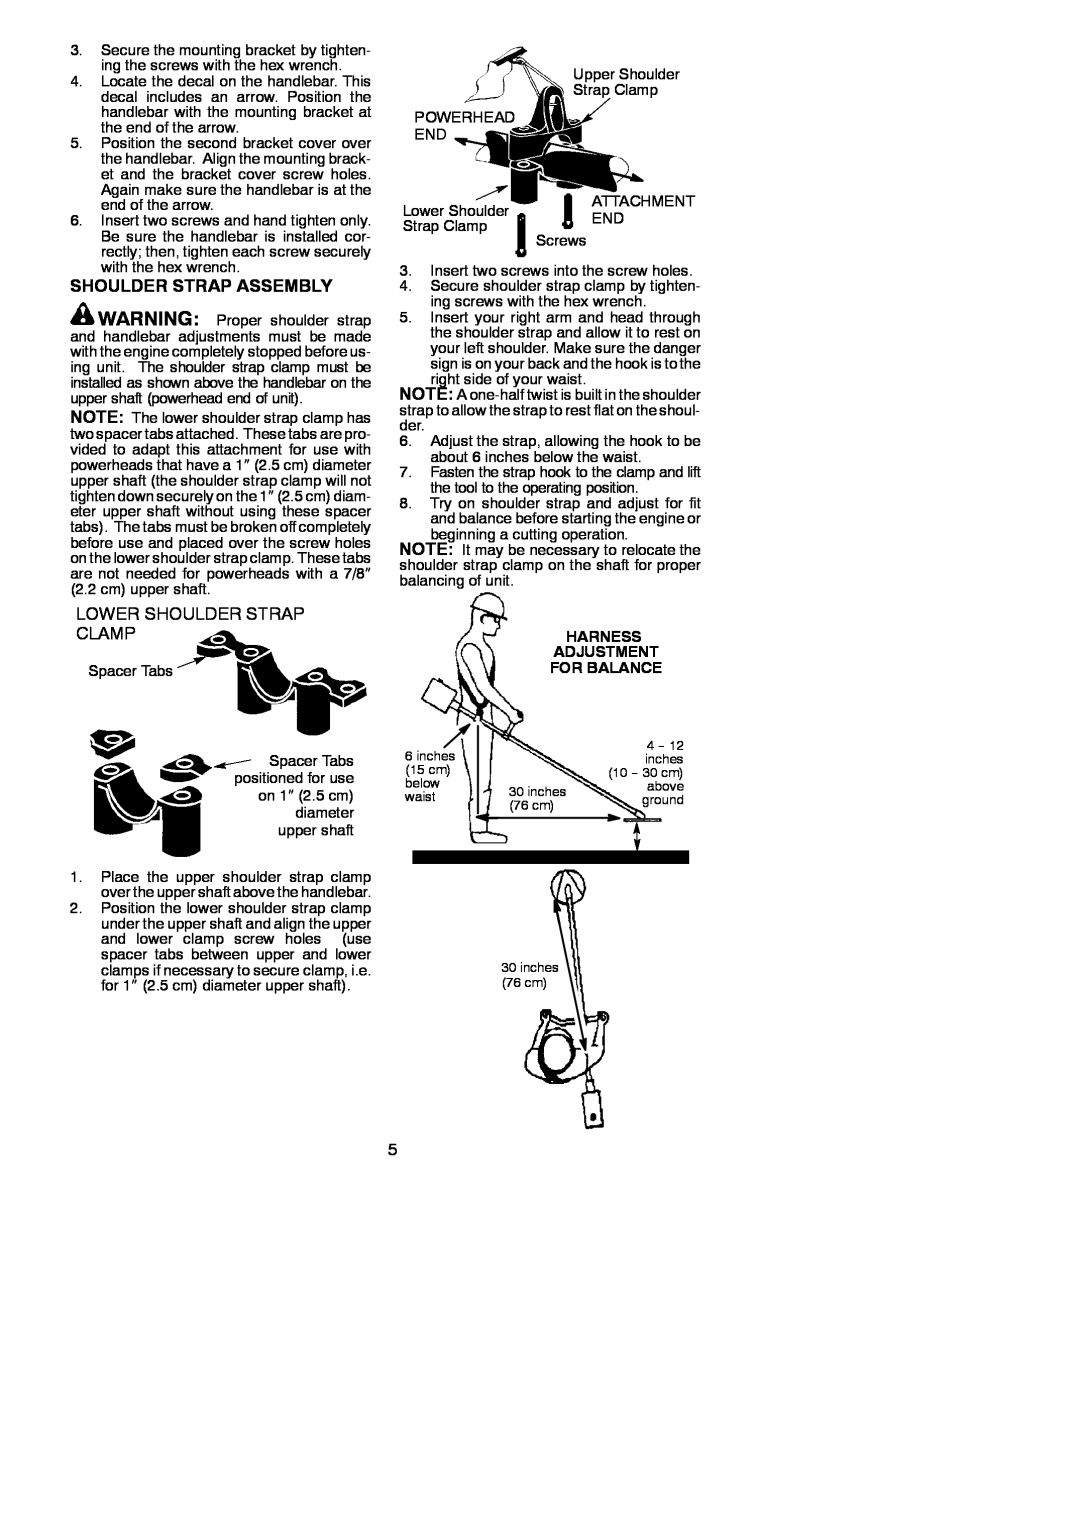 Poulan U4000C instruction manual Shoulder Strap Assembly, Lower Shoulder Strap Clamp, Harness Adjustment For Balance 